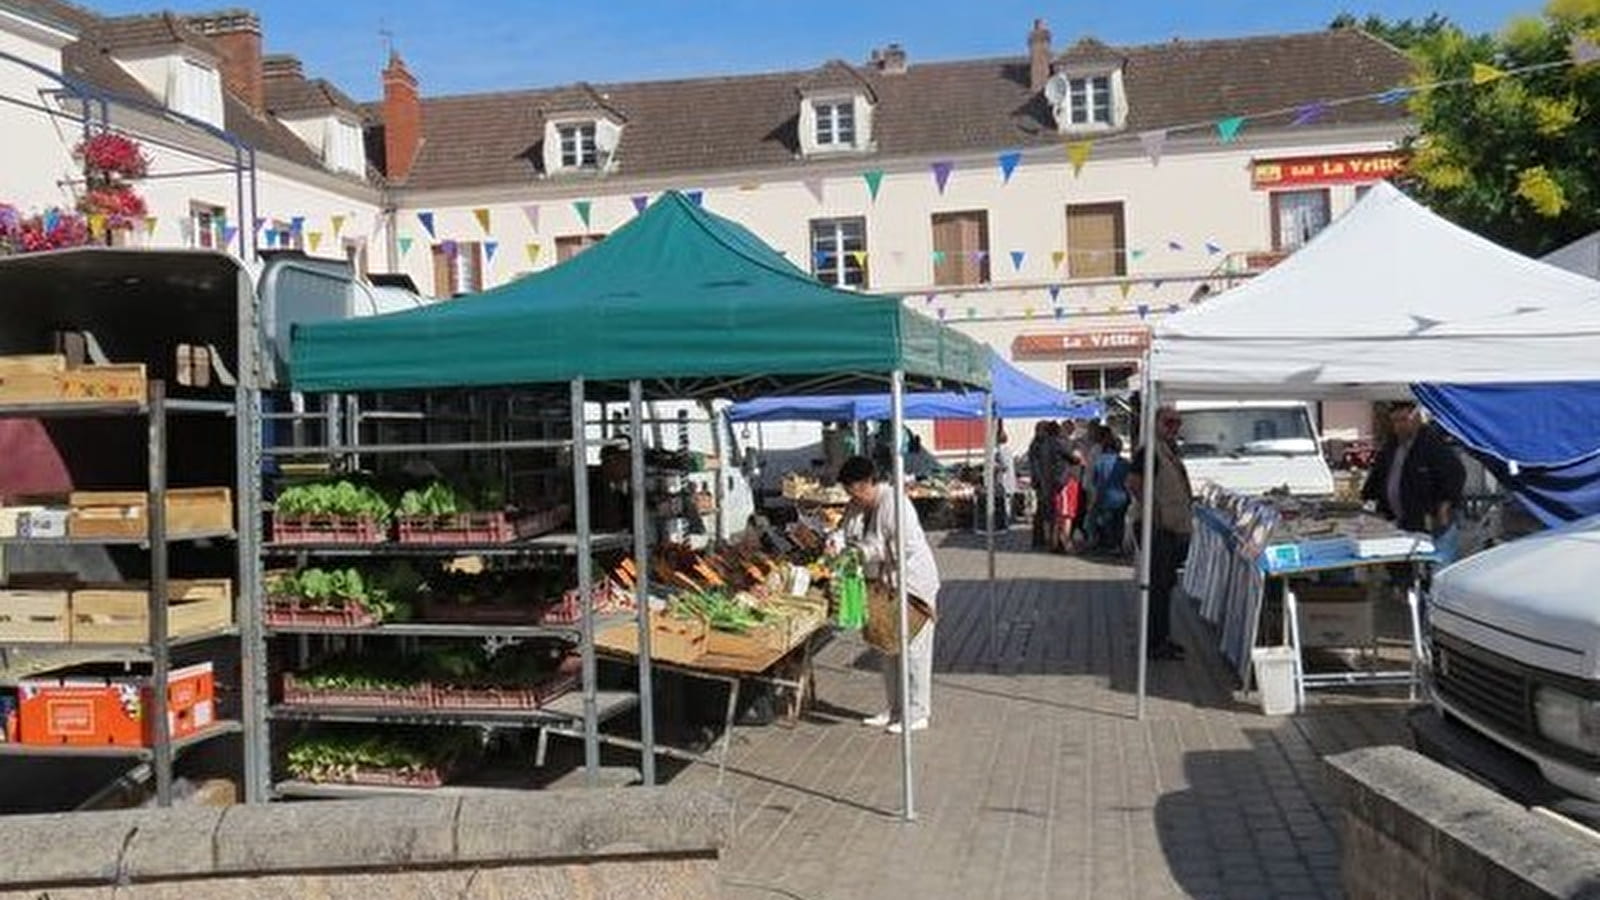 Weekly market in Neuvy-sur-Loire